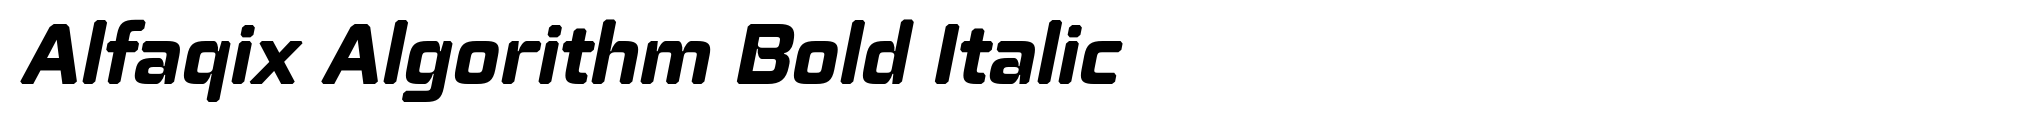 Alfaqix Algorithm Bold Italic image